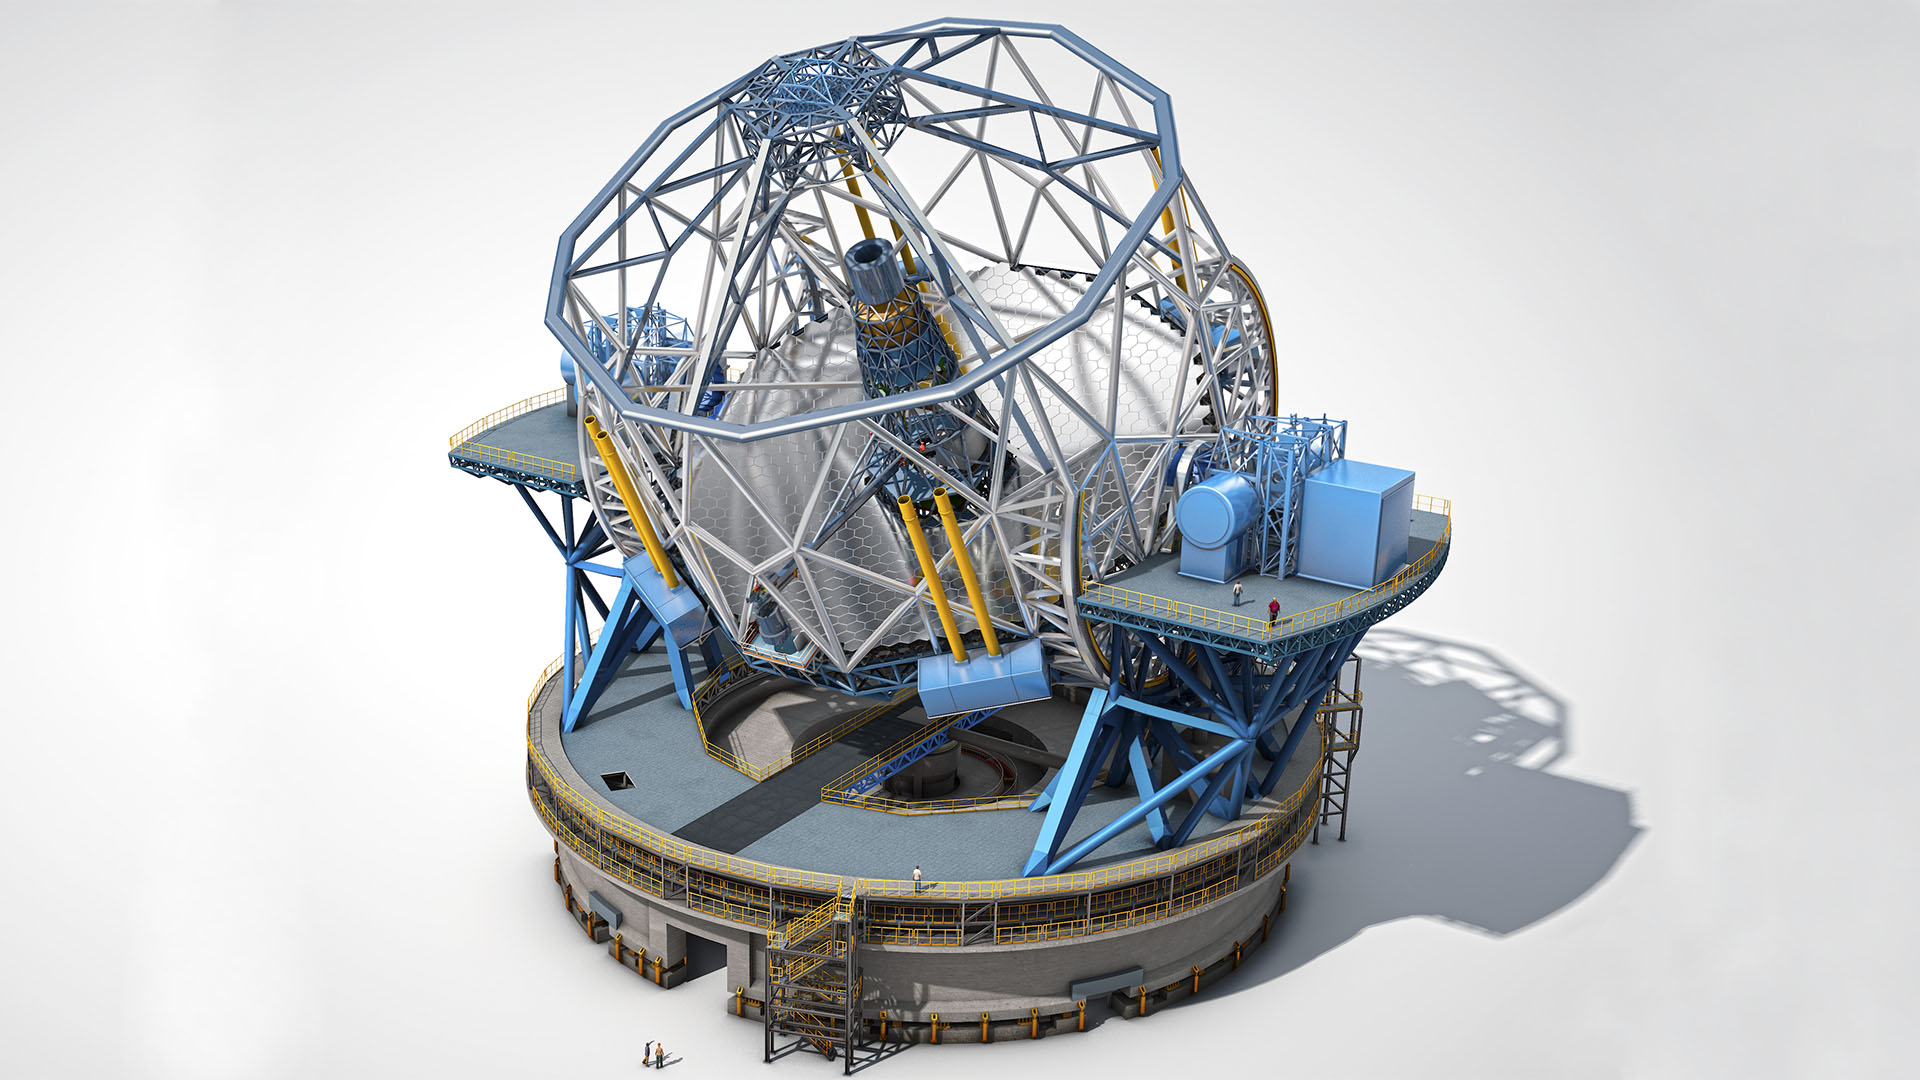 In Planung: Das größte Spiegelteleskop weltweit, Durchmesser 39 m – European Extremely Large Telescope (ESO)